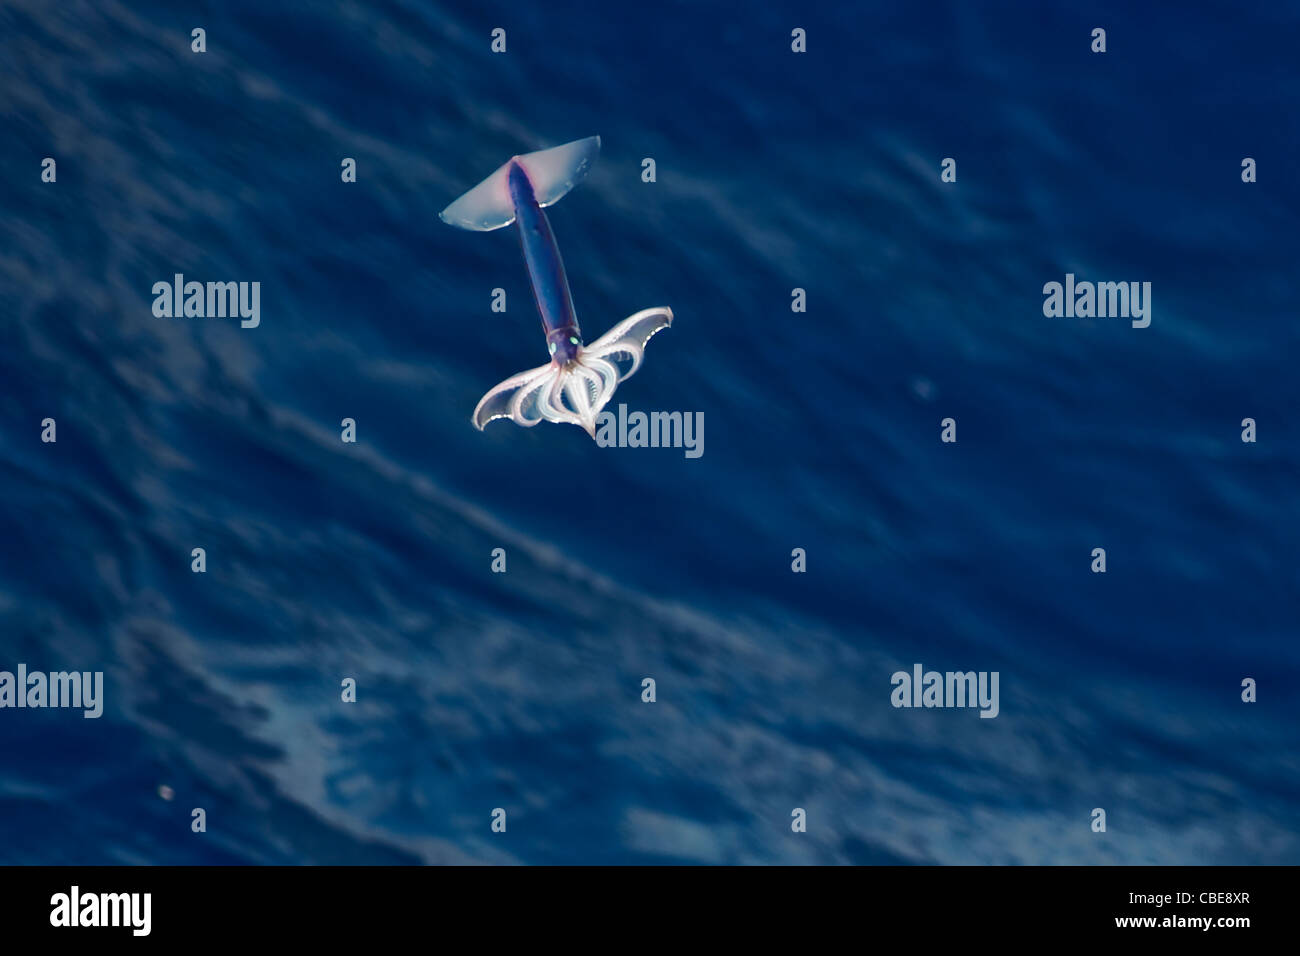 Très rare image d'un encornet volant néon (Ommastrephes bartramii) à la mi-air, l'océan Atlantique Sud. Pas une manipulation numérique. Banque D'Images